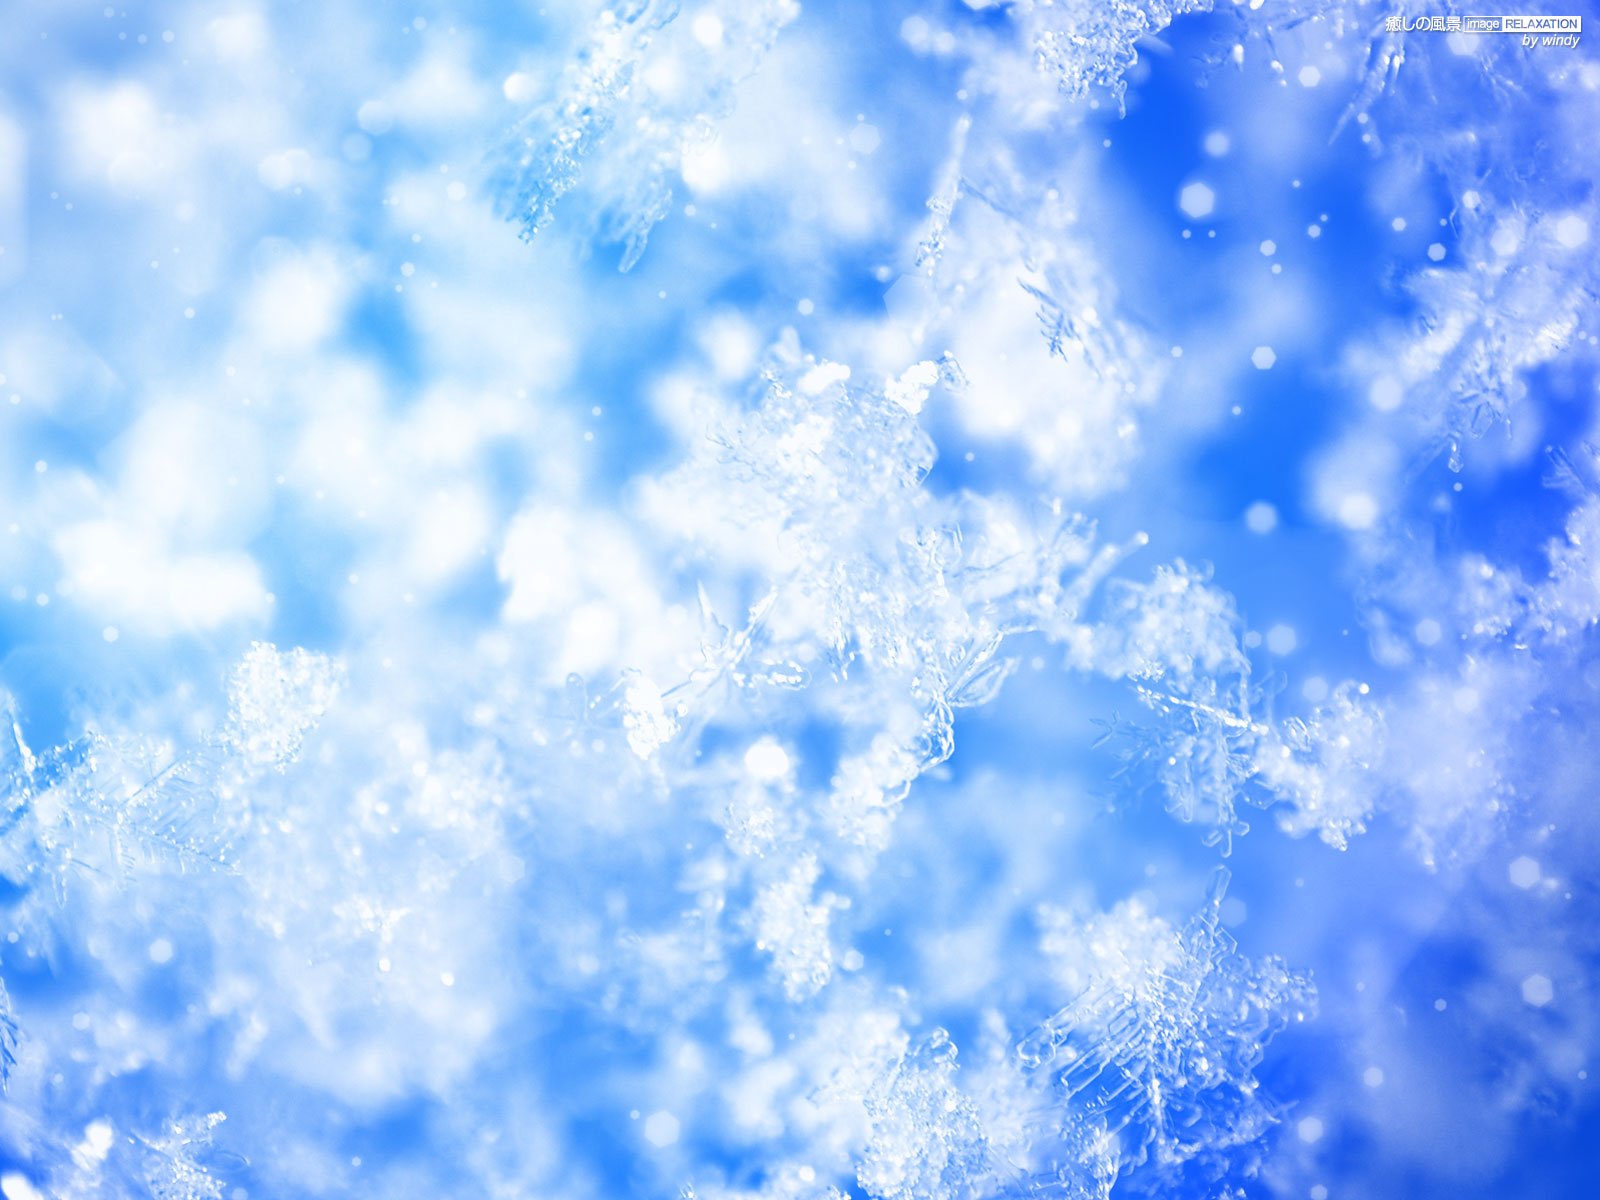 雪の結晶 壁紙 ブルー系